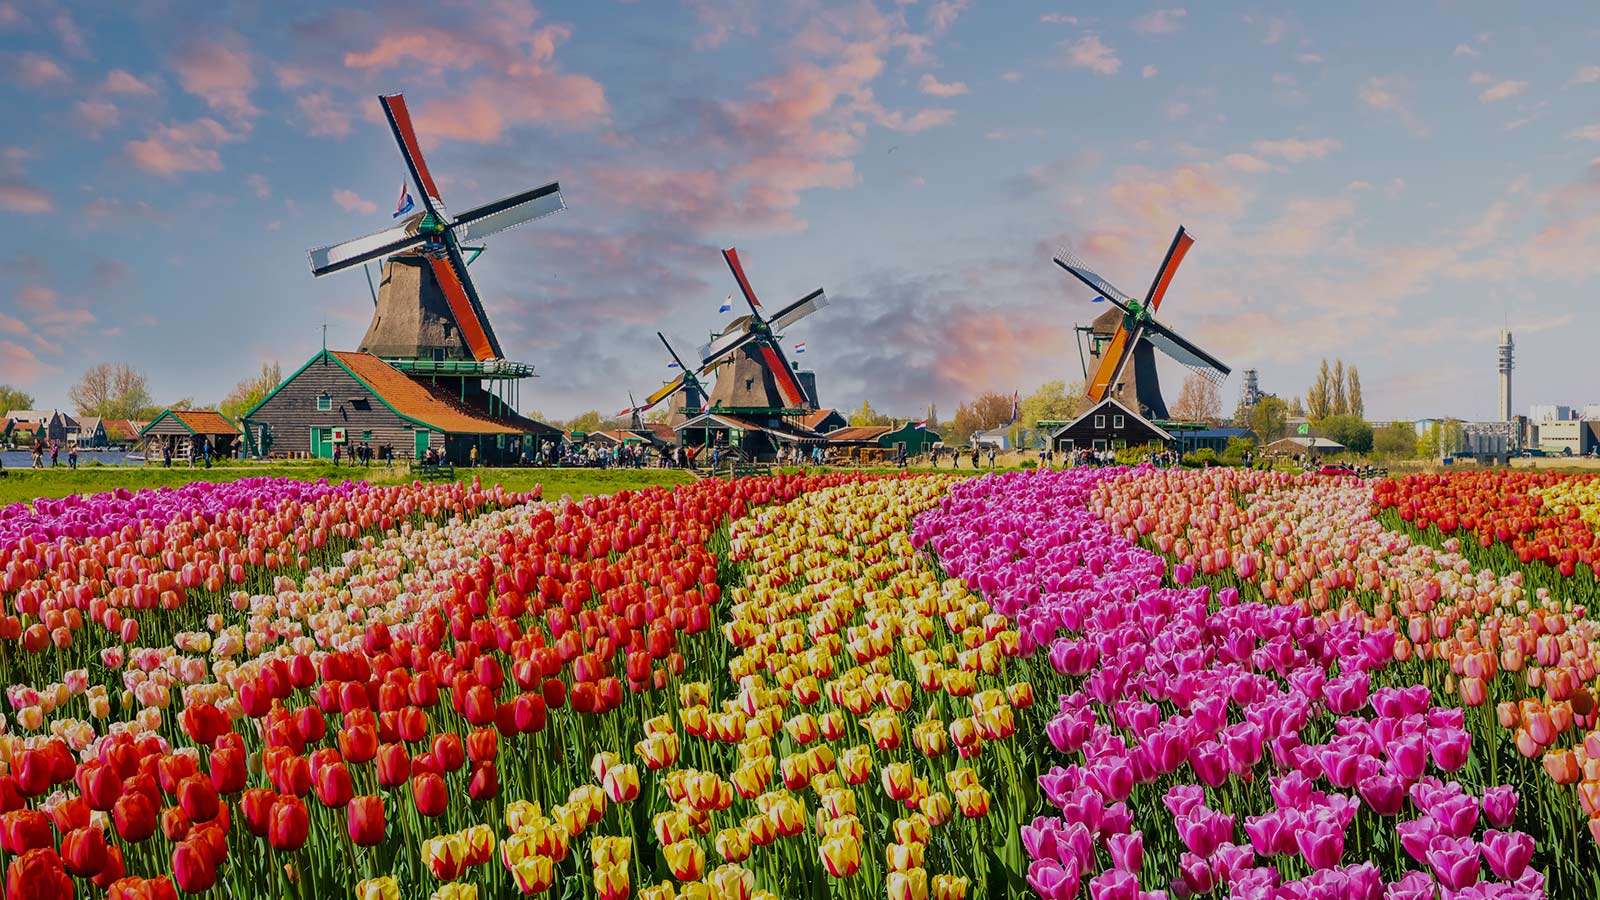 Les-Pays-Bas-en-fleurs-image-de-fond